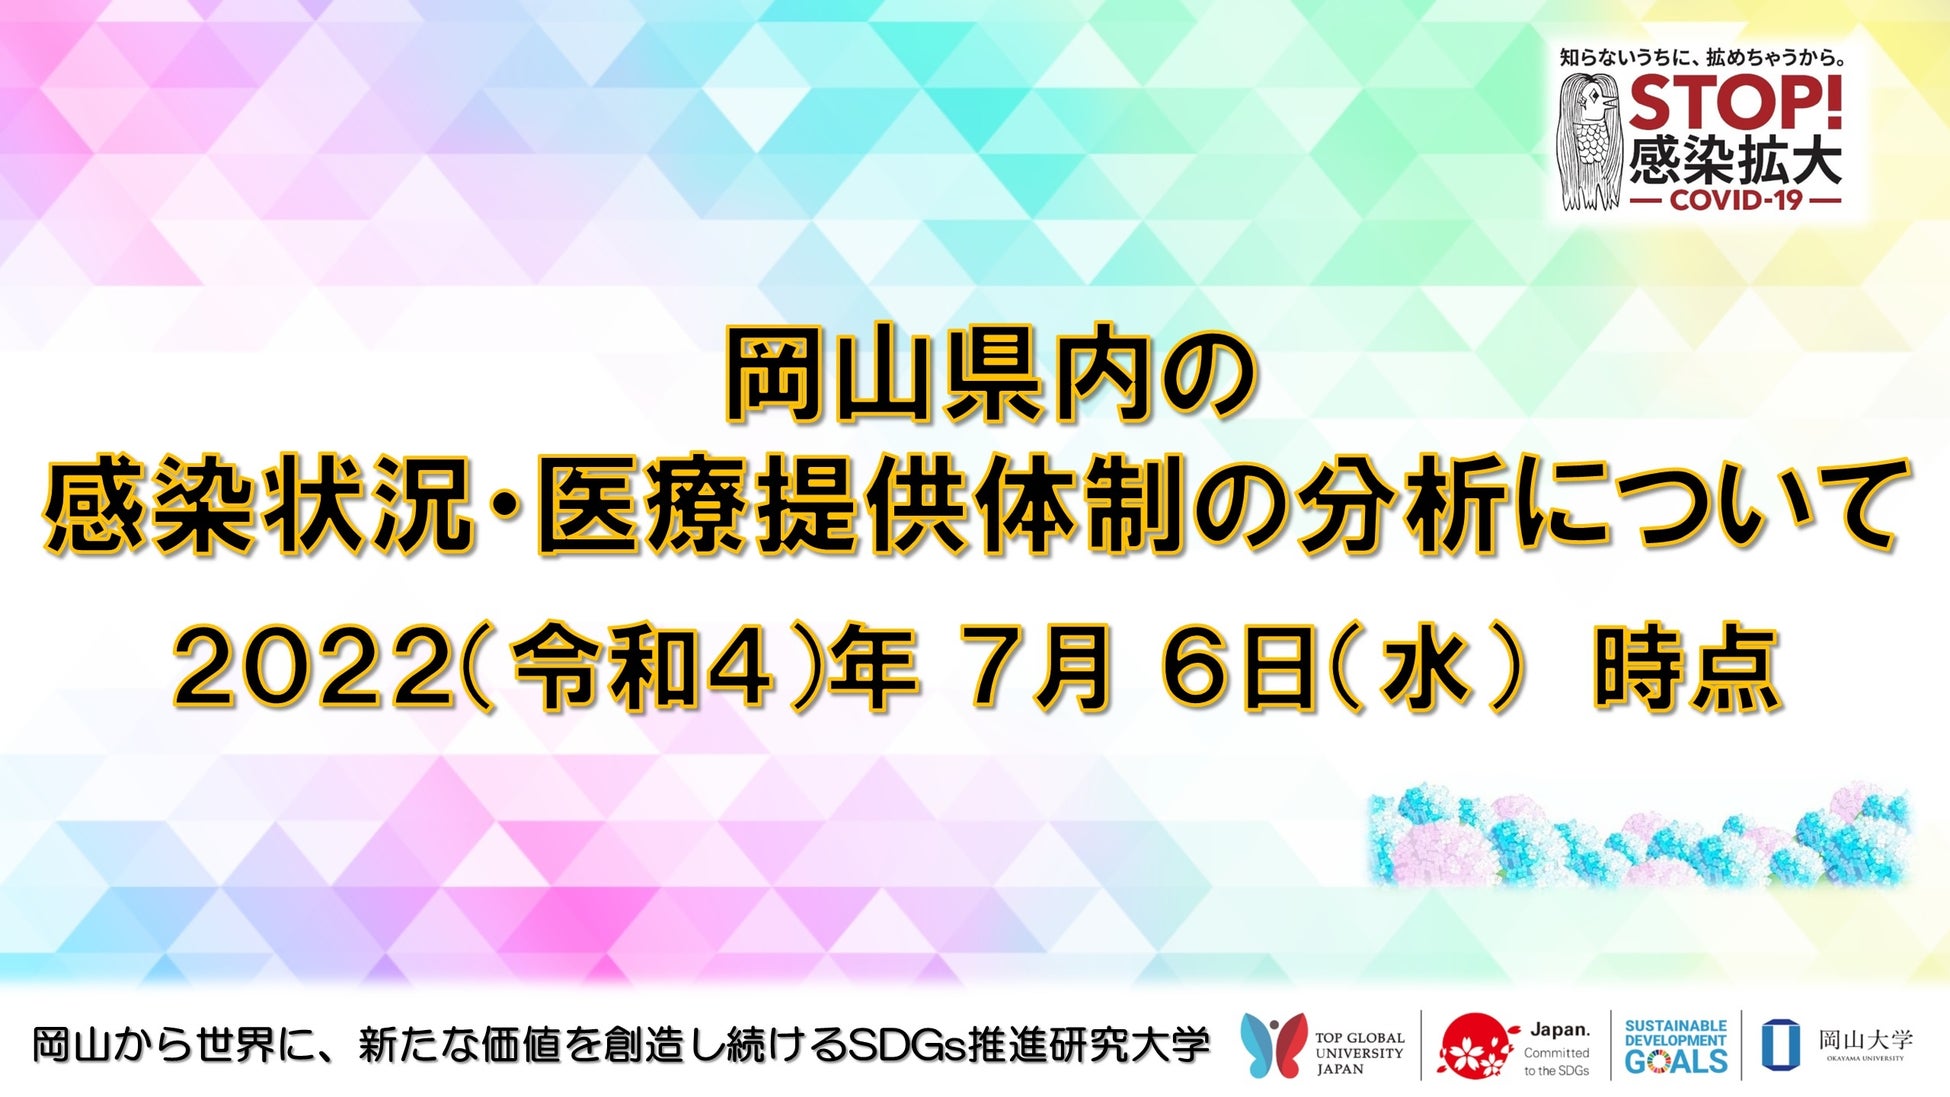 日本製紙パピリアと㈱ファンケルラボのコラボレーションから生まれたエシカルな森のスキンケア「バイオフィート」が新製品の発売を記念して、１９都道府県キャンペーンを実施